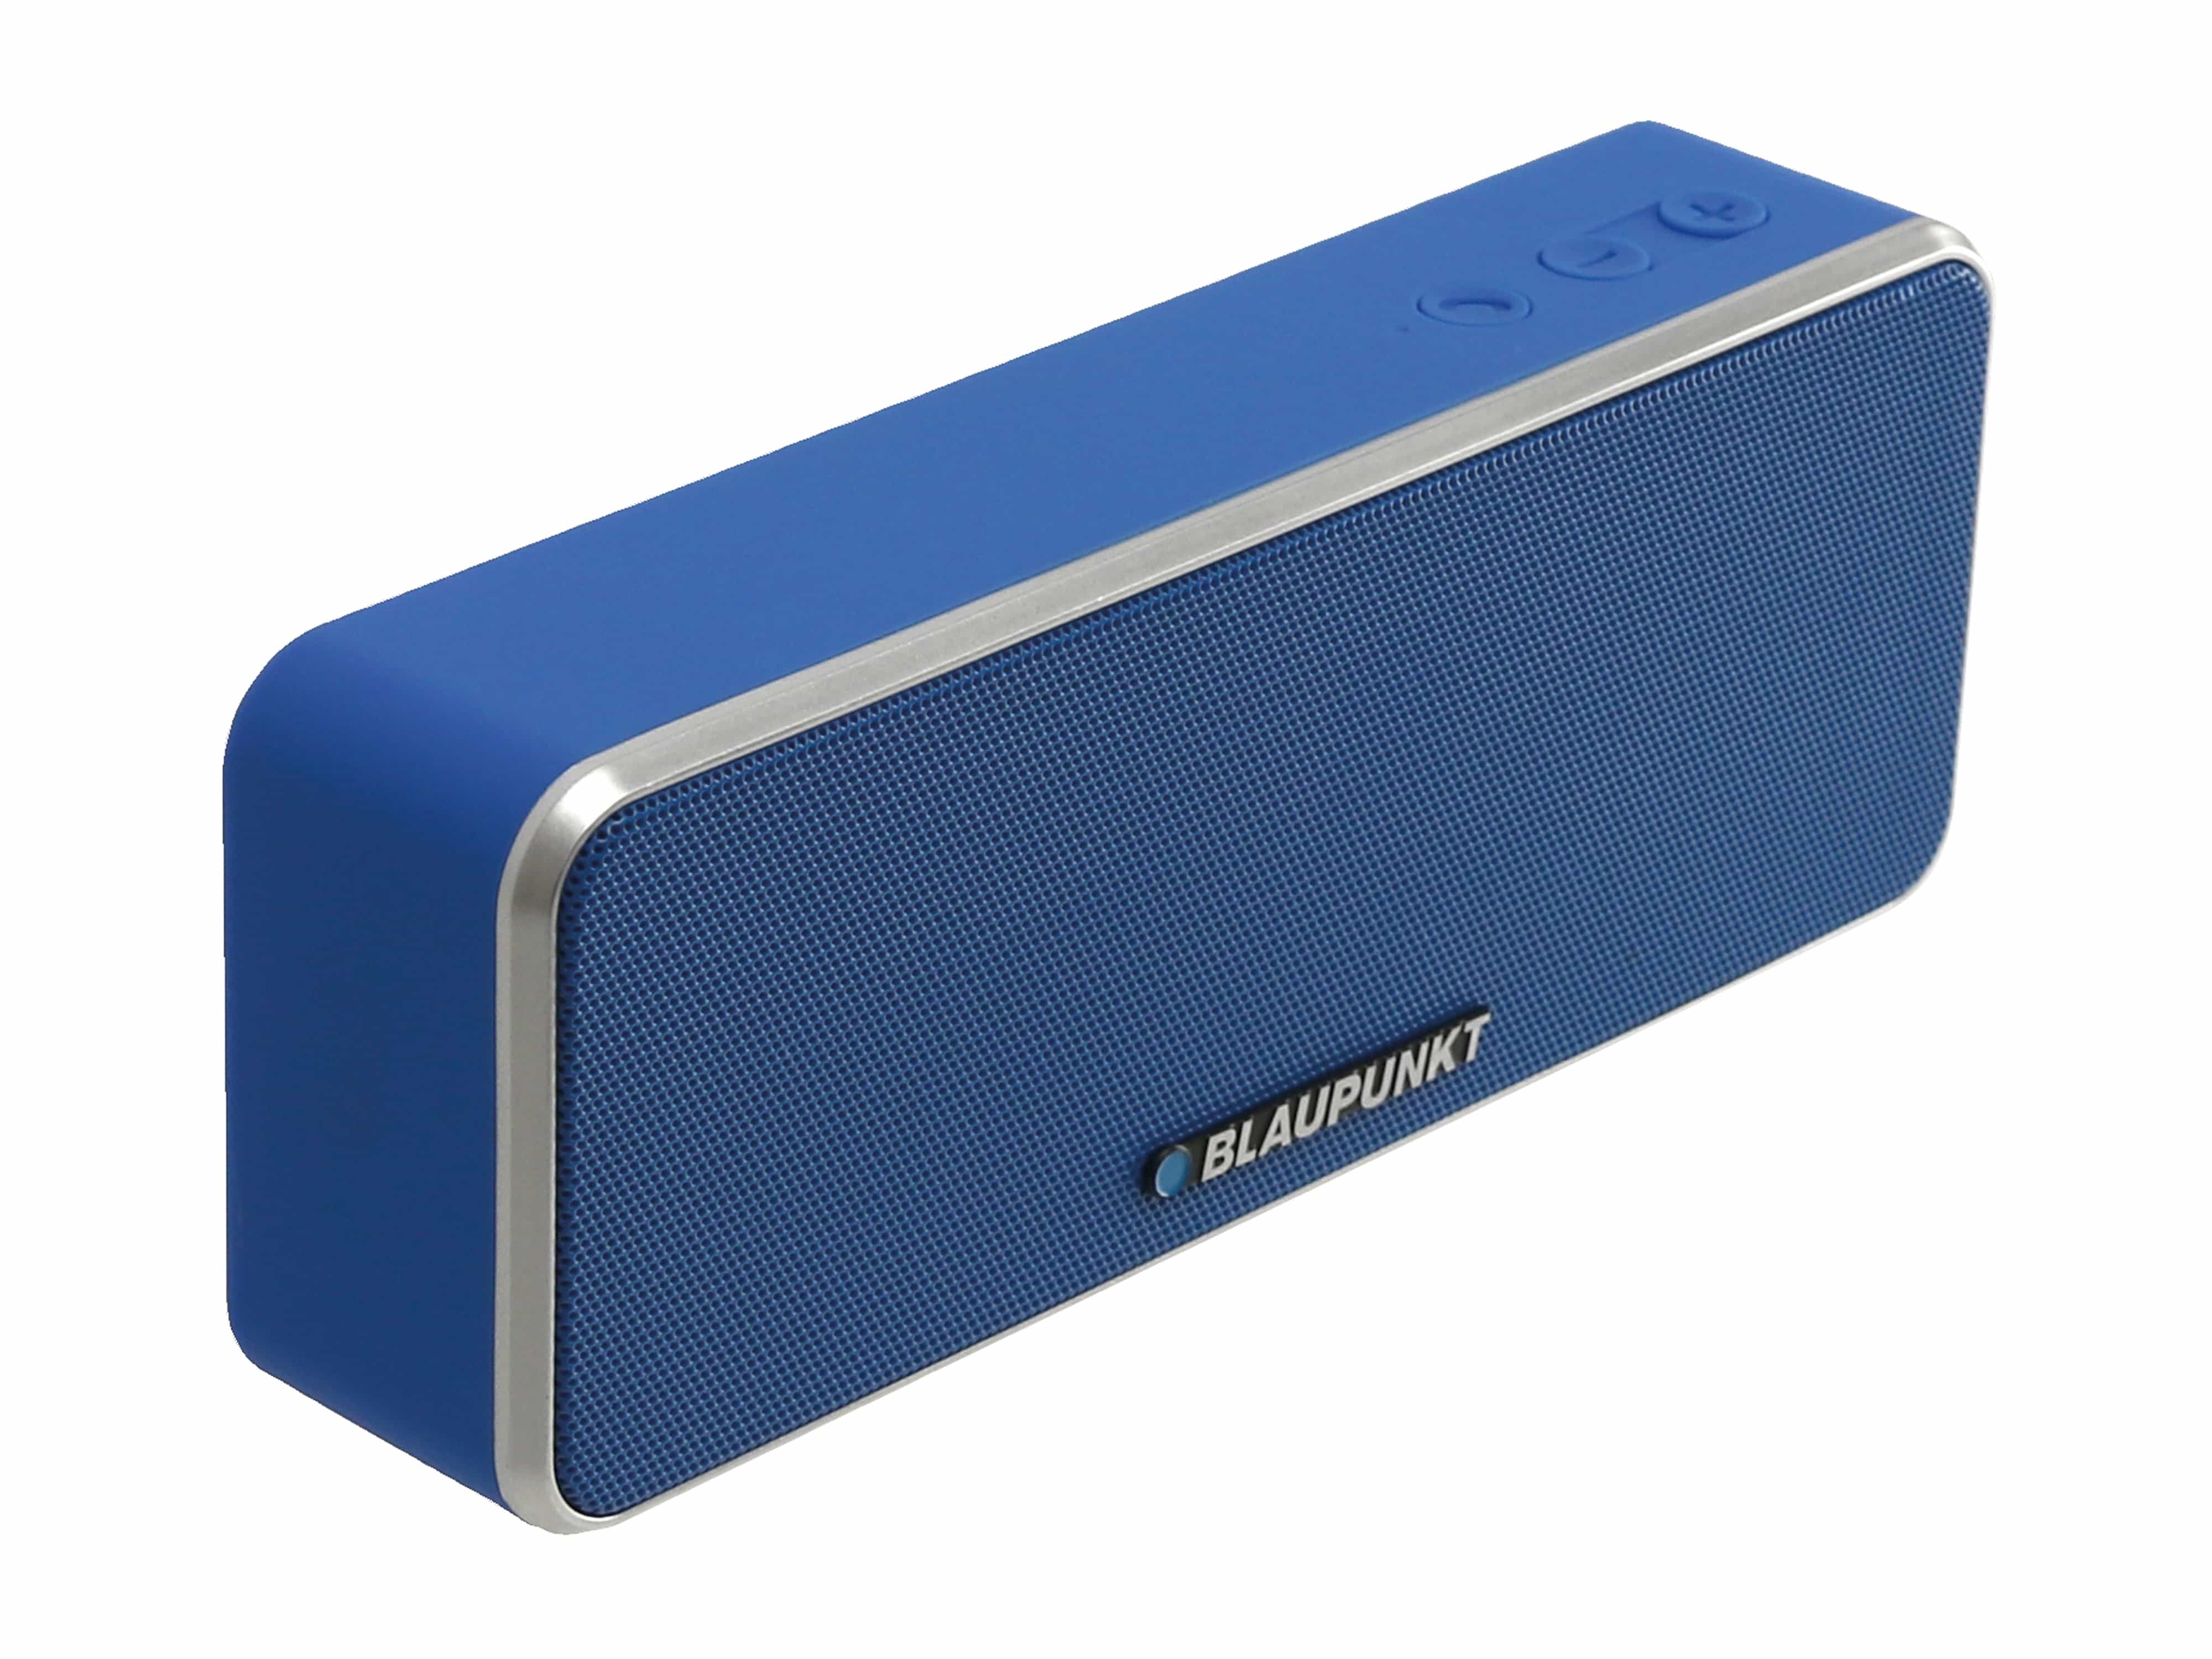 BLAUPUNKT Bluetooth-Lautsprecher BT 6, blau